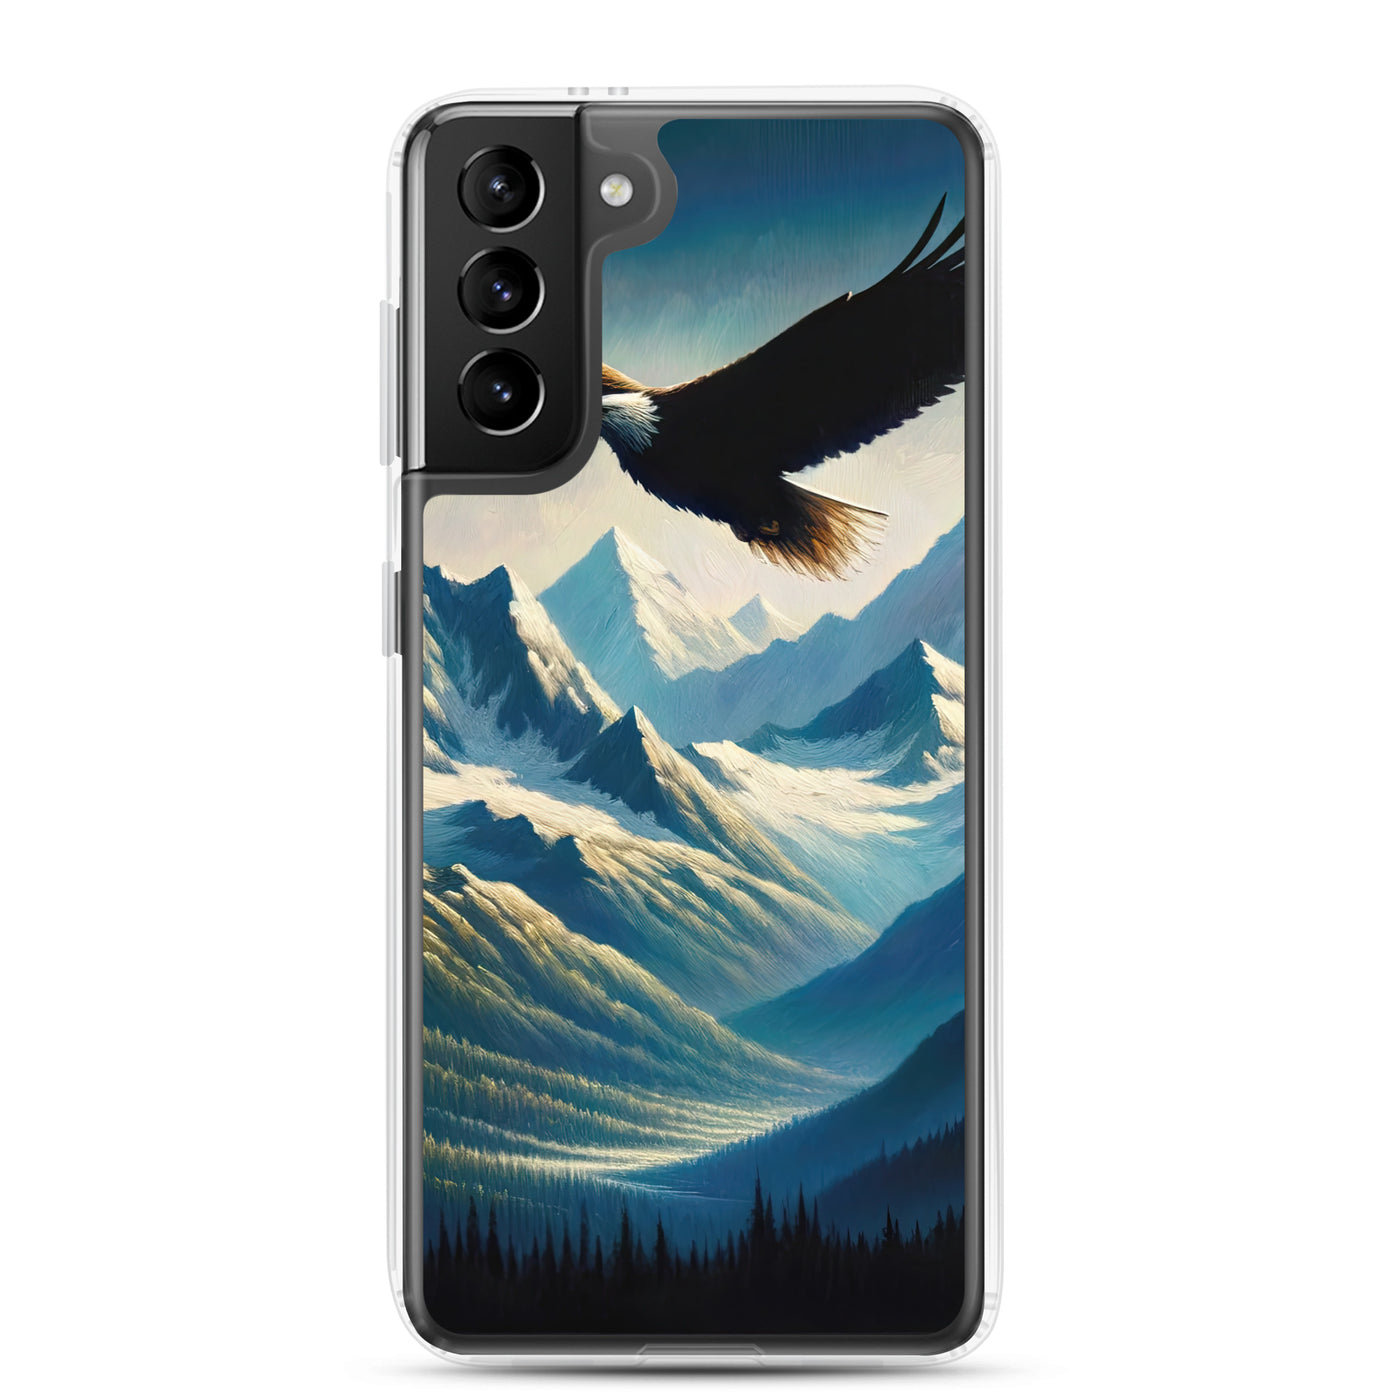 Ölgemälde eines Adlers vor schneebedeckten Bergsilhouetten - Samsung Schutzhülle (durchsichtig) berge xxx yyy zzz Samsung Galaxy S21 Plus